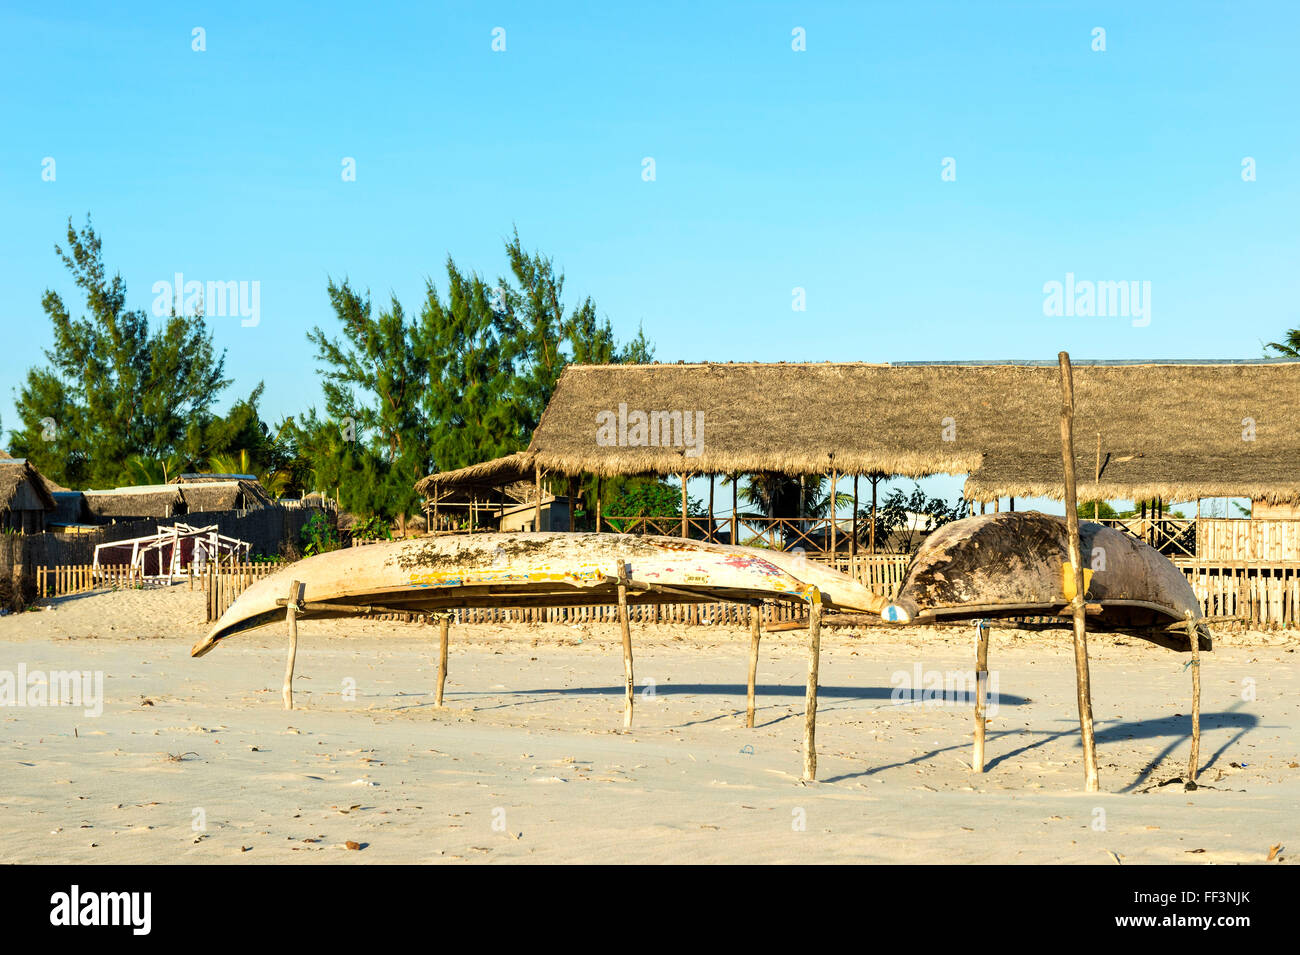 Bateaux de pêche sur la plage, Morondava, la province de Toliara, Madagascar Banque D'Images